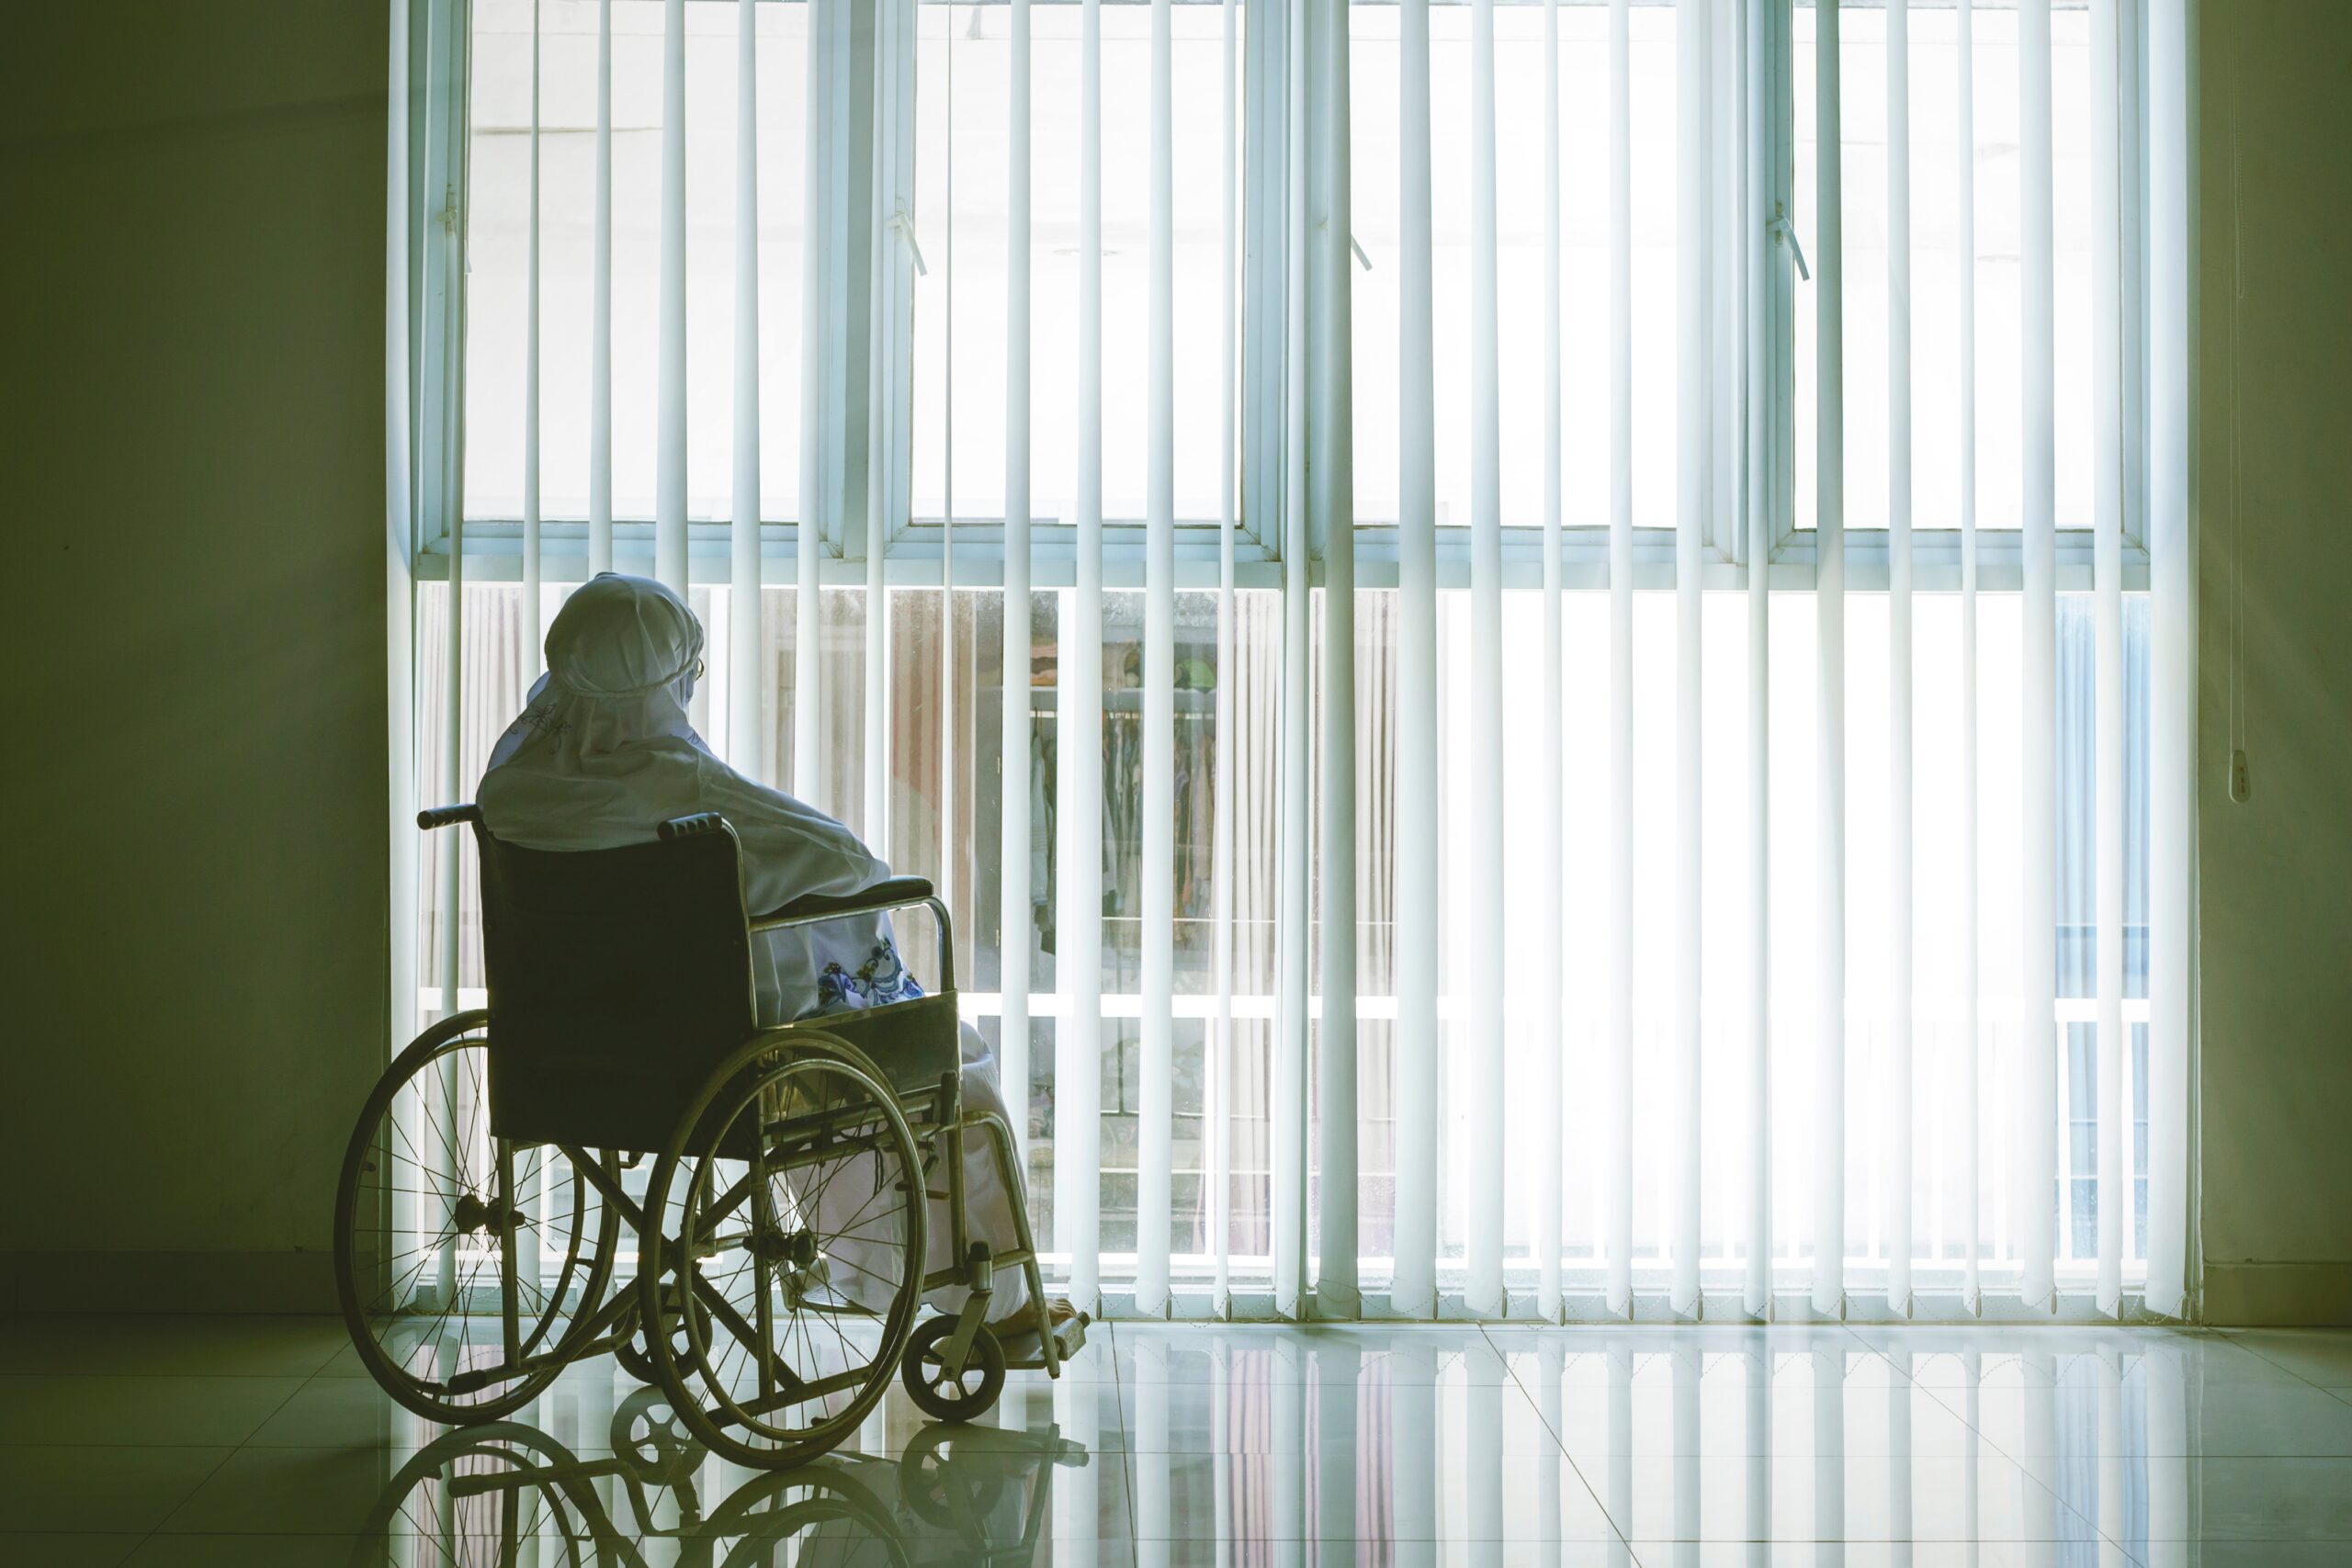 Vrouw met hoofddoek in rolstoel voor raam